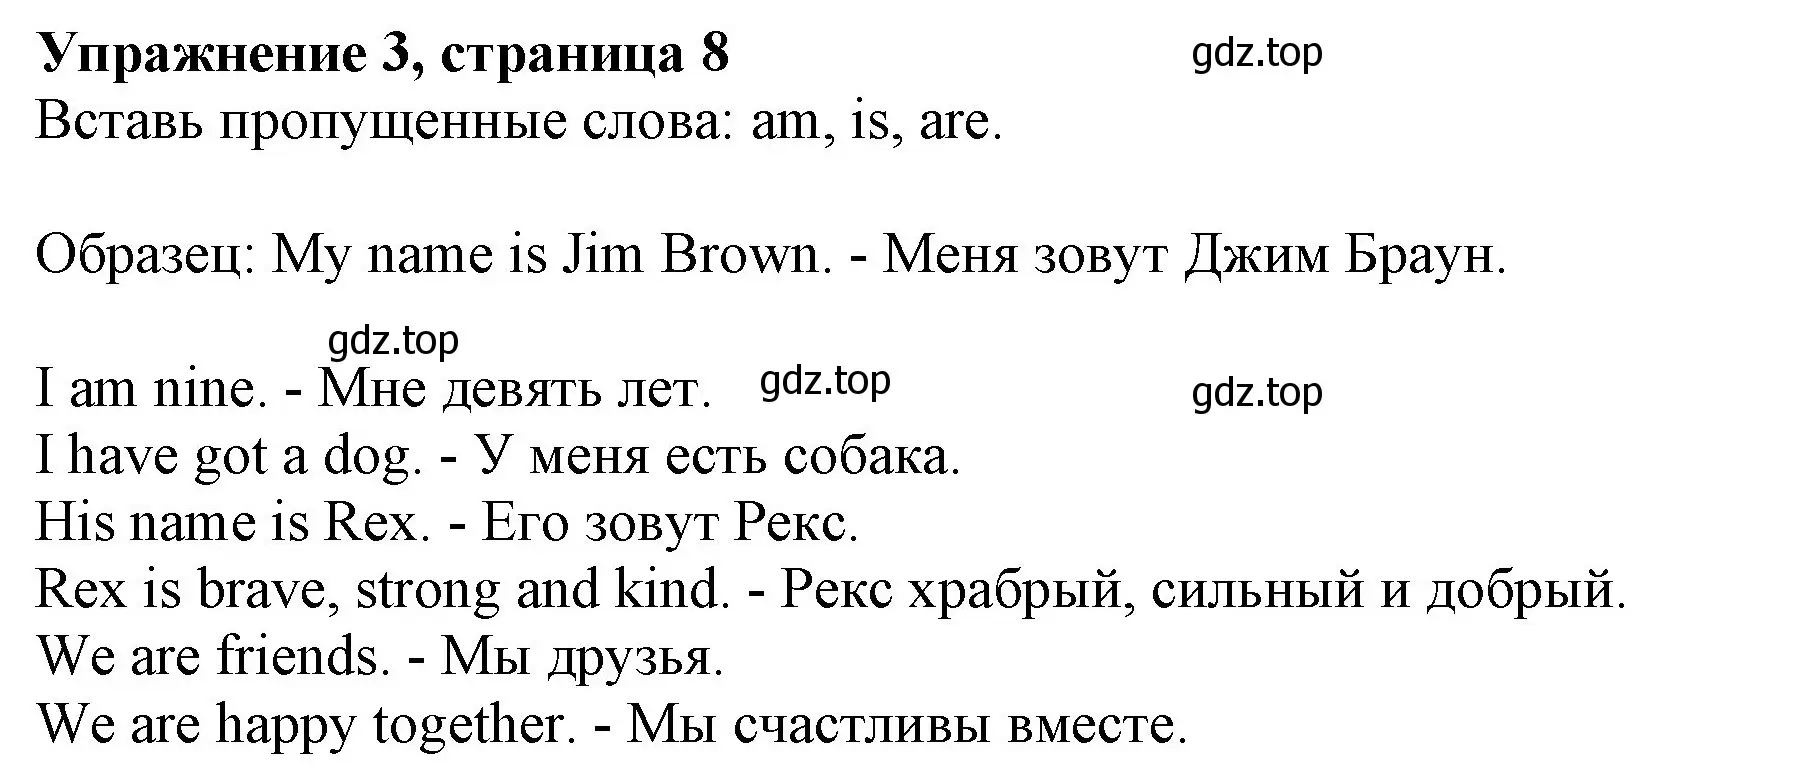 Решение номер 3 (страница 8) гдз по английскому языку 3 класс Биболетова, Денисенко, рабочая тетрадь